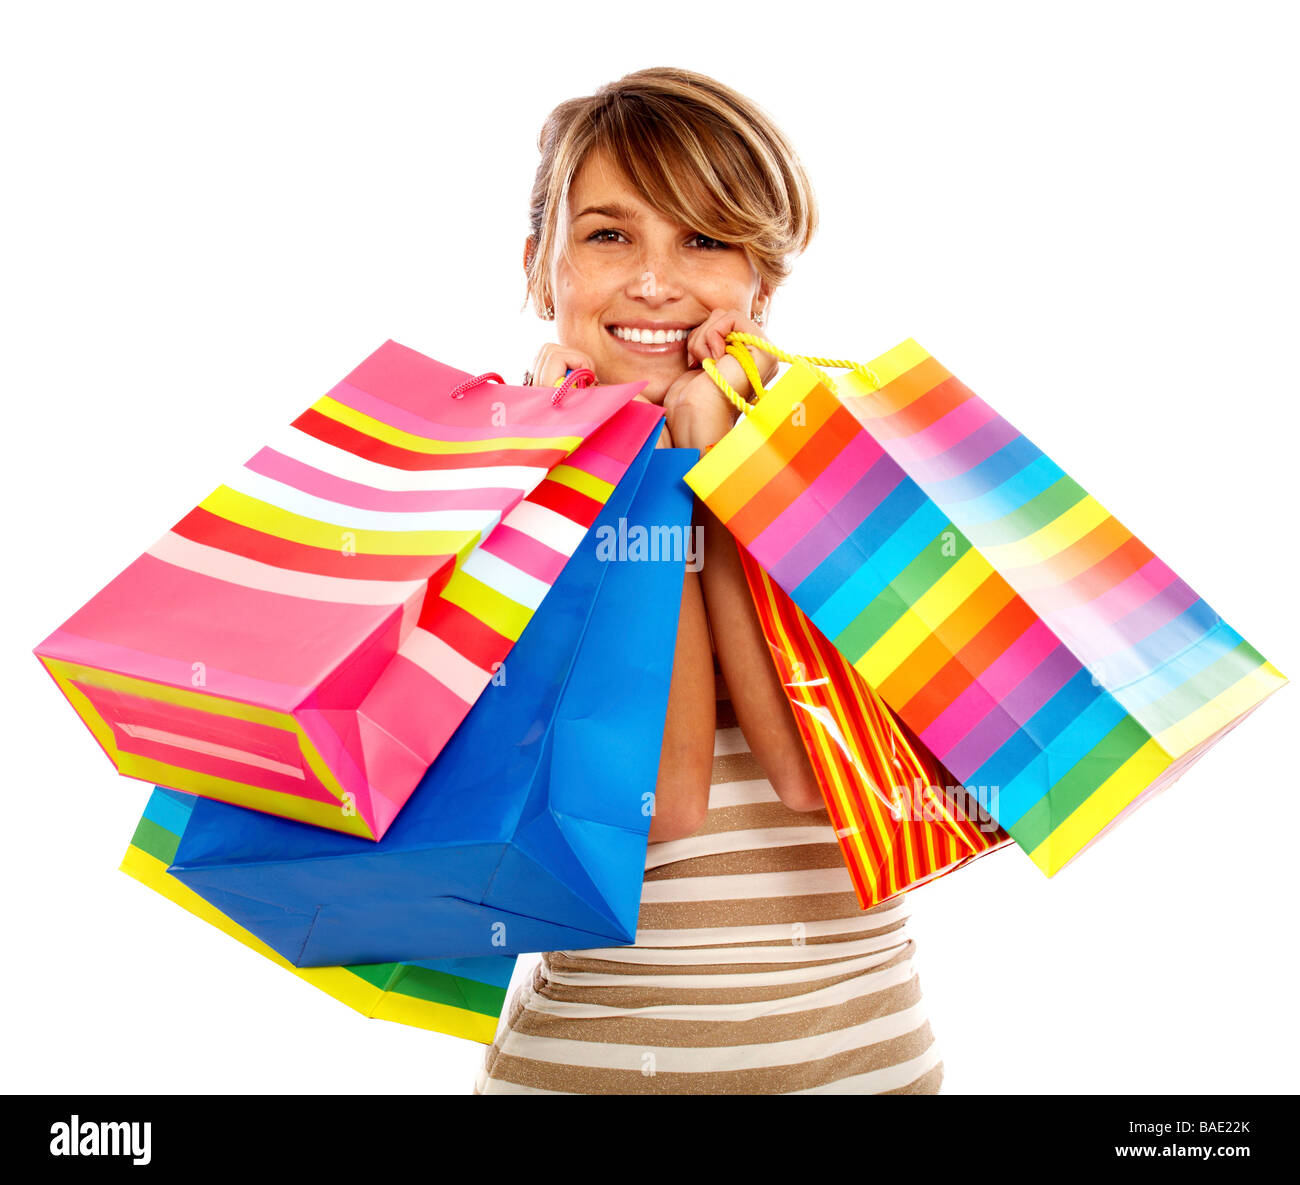 Mädchen lächelnd und Einkaufstaschen isoliert auf einem weißen Hintergrund Stockfoto